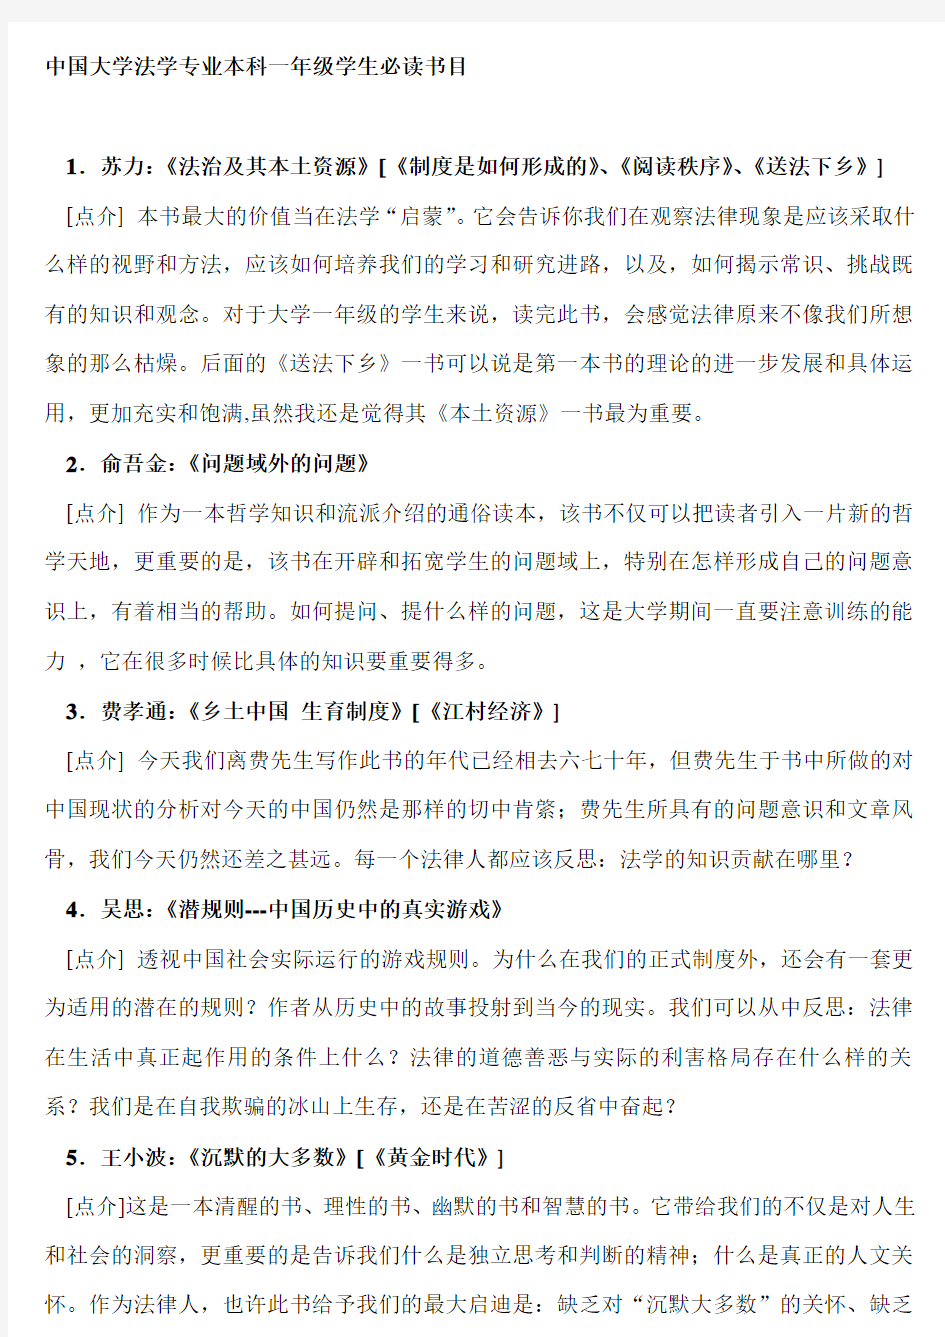 中国大学法学专业本科一年级学生必读书目